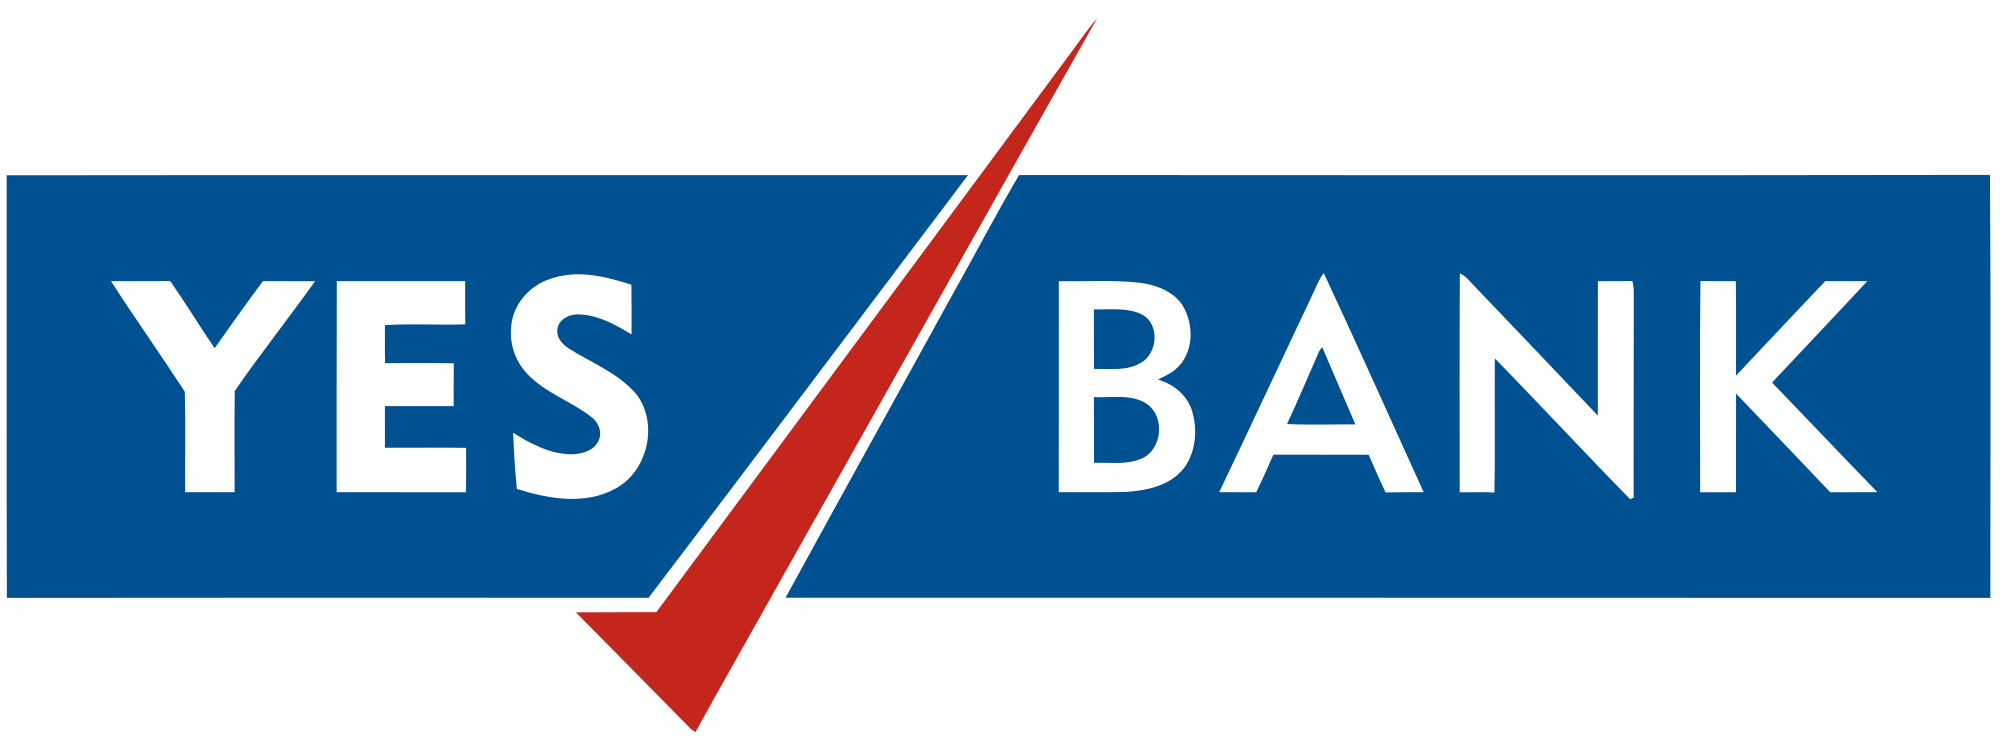 Banking Logo - Yes Bank SVG Logo.svg